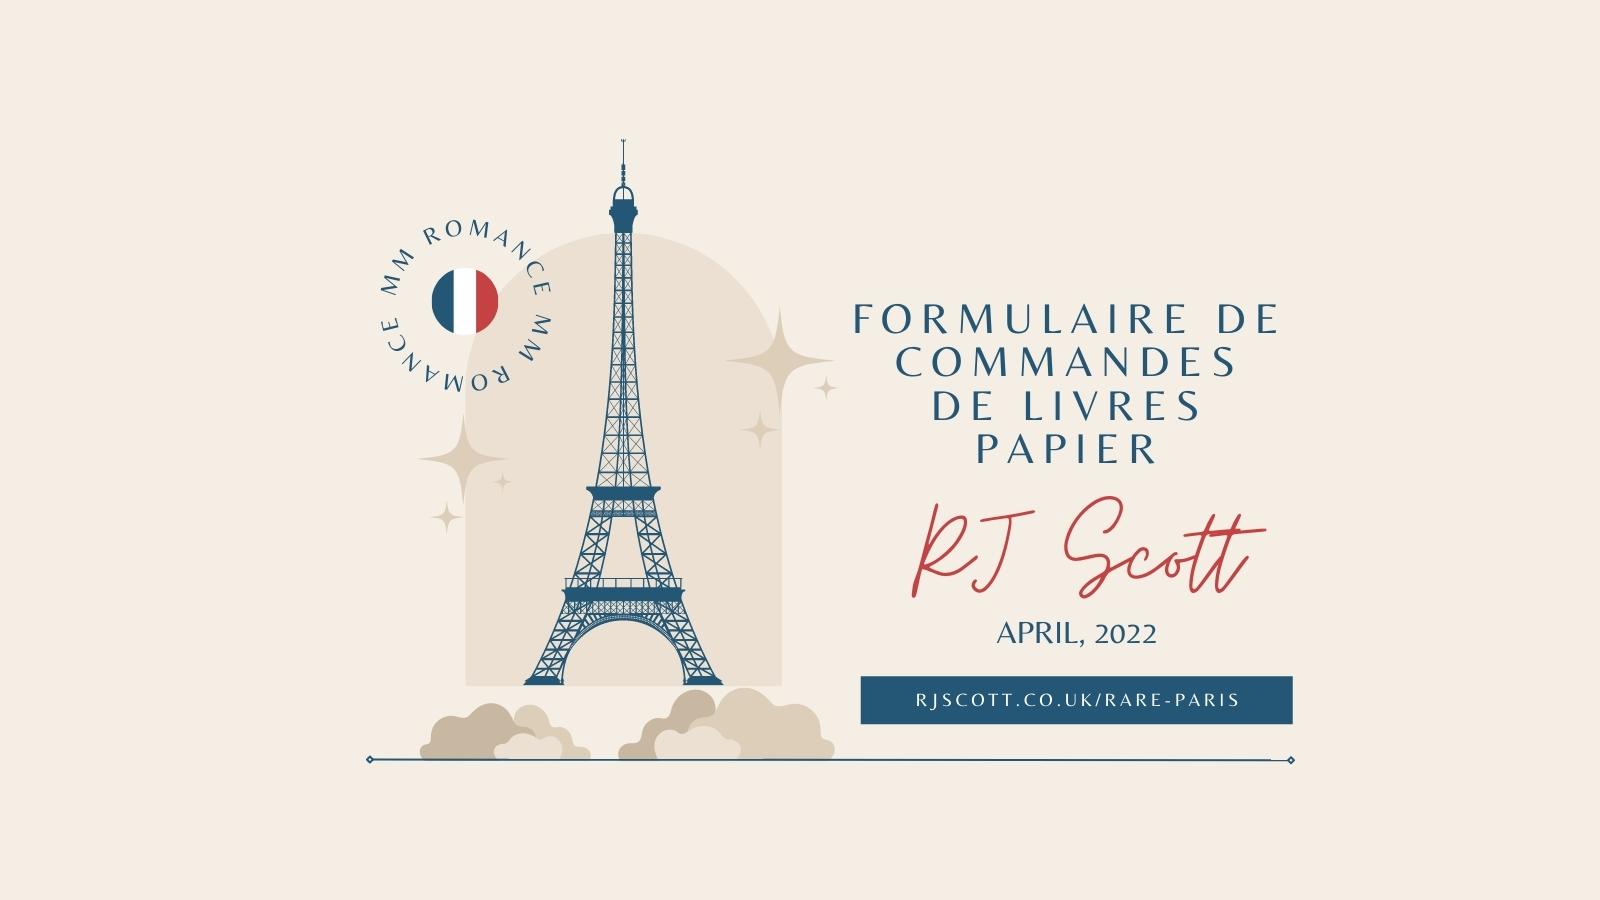 Formulaire de commandes de livres papier – RJ Scott MM Romance Author RARE PARIS 2022